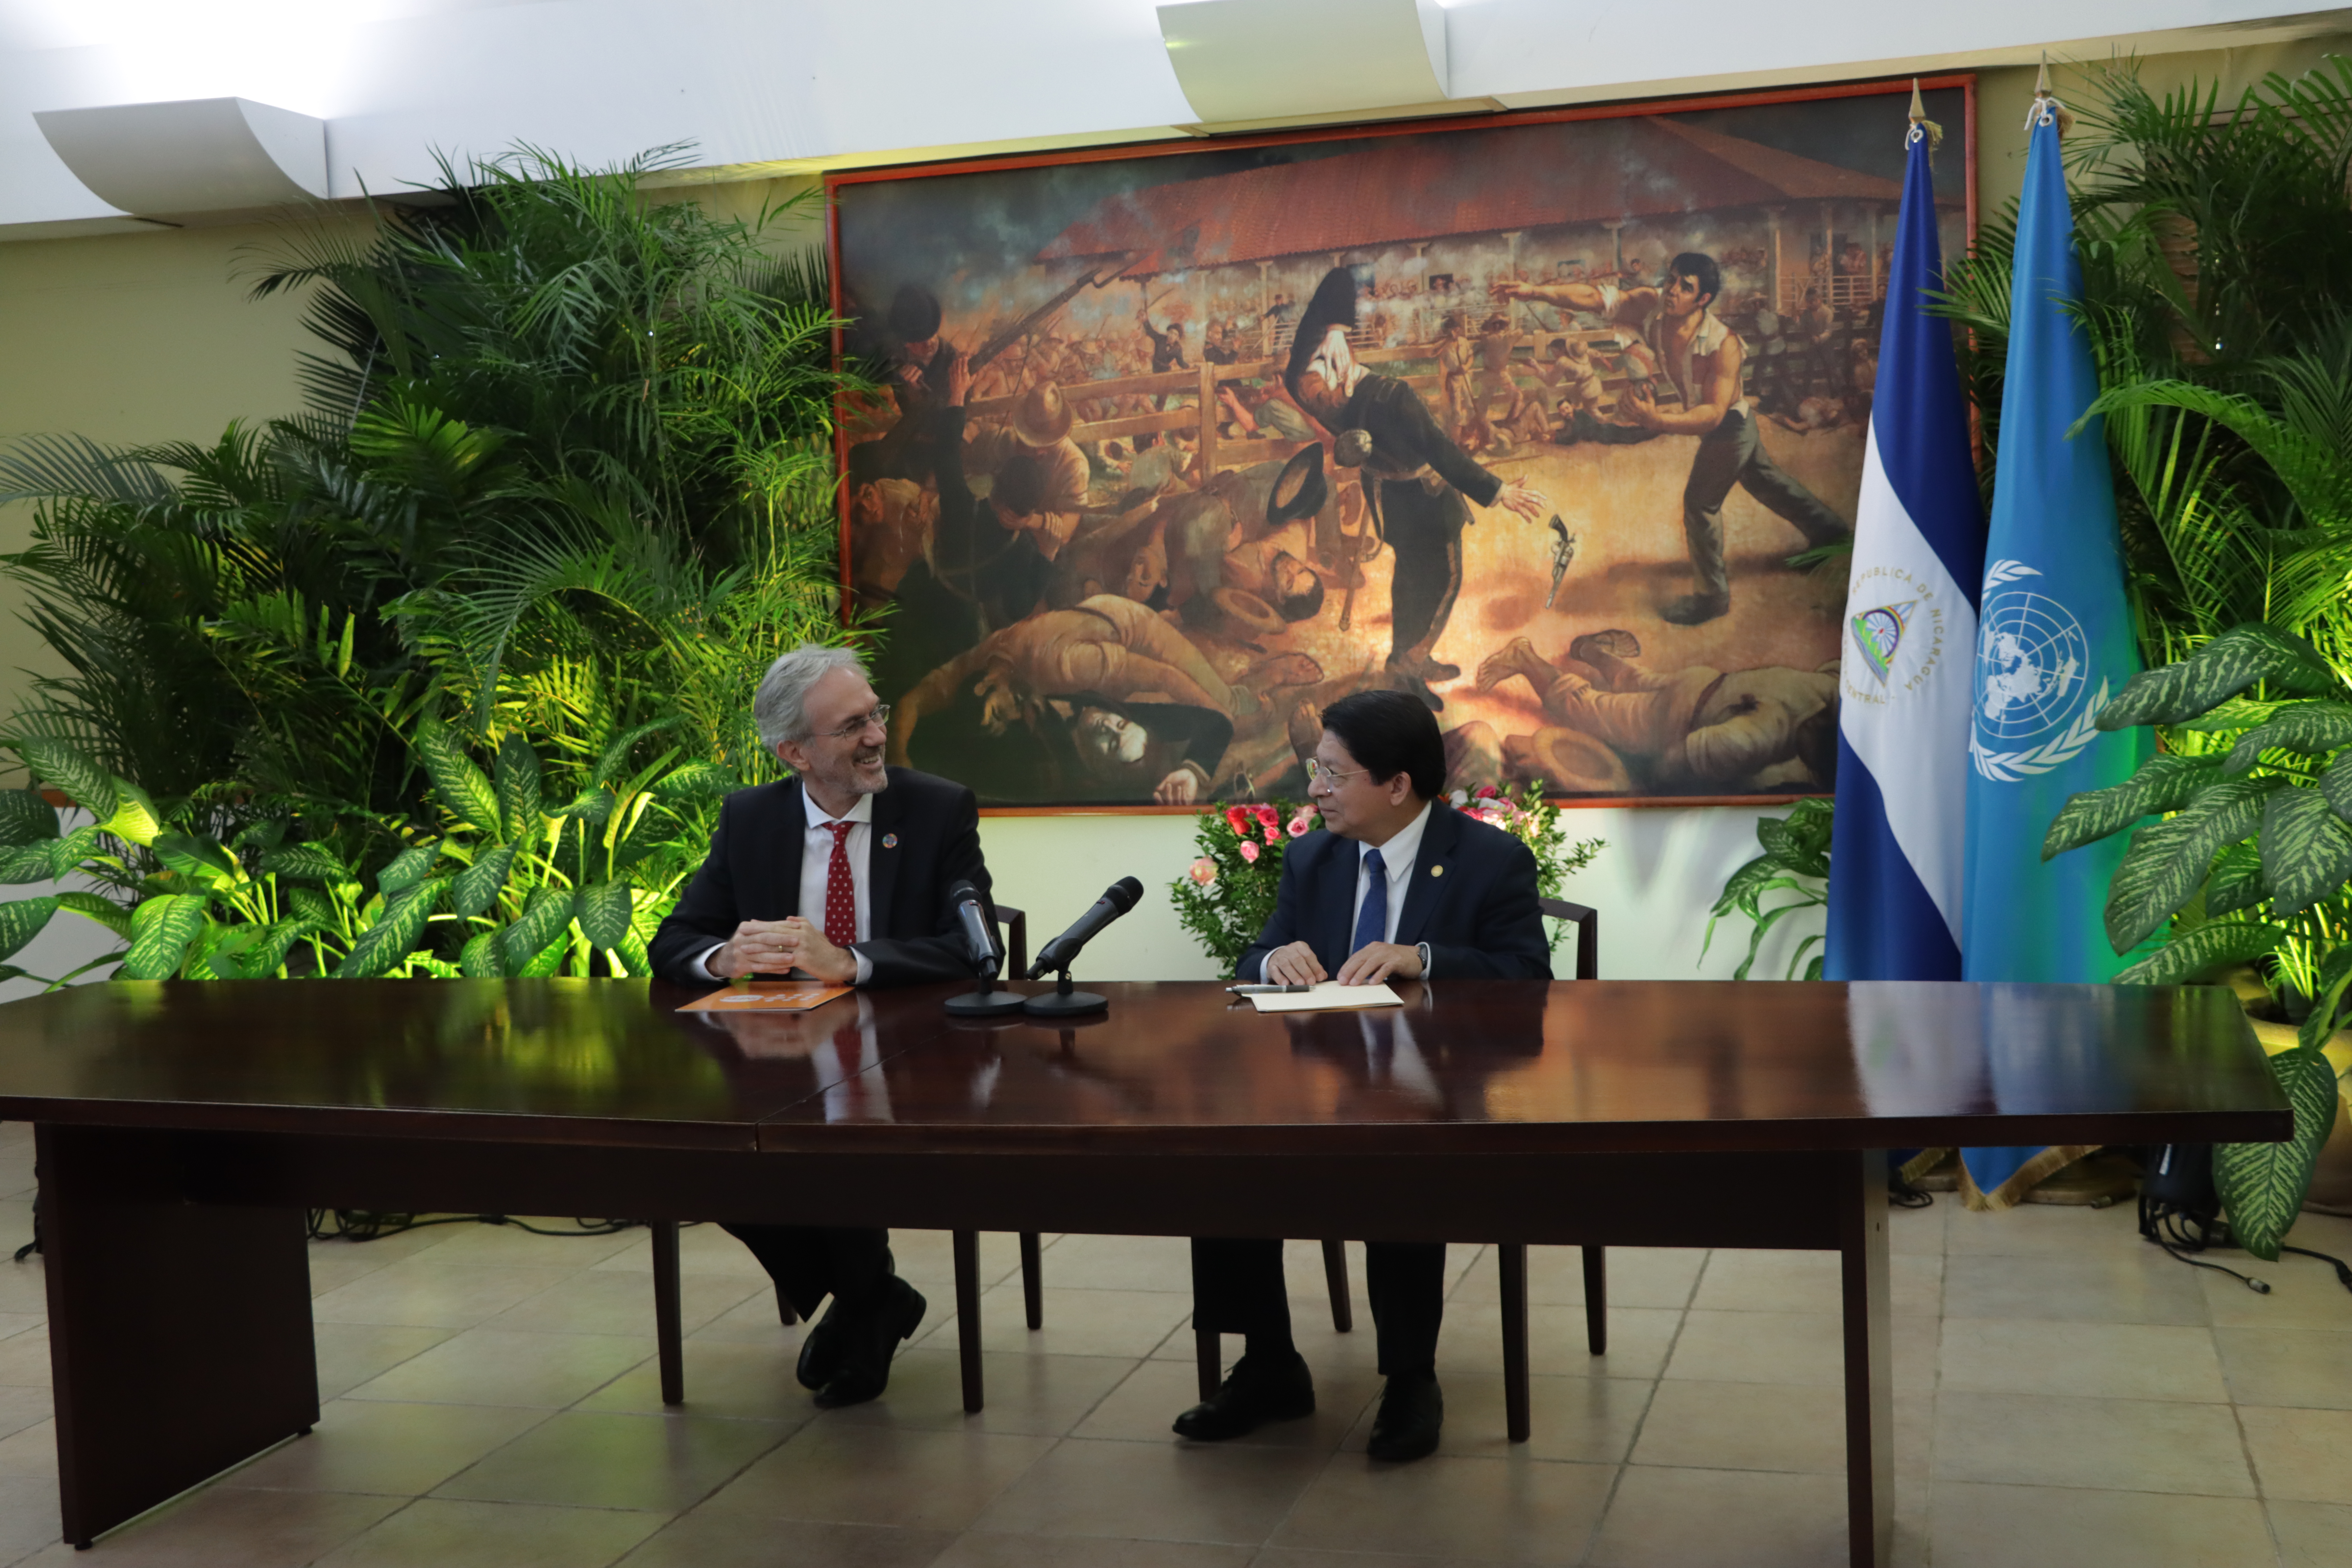 Jozef Maeriën, Representante del Fondo de Población de las Naciones Unidas en Nicaragua y Sr. Denis Moncada, Ministro de Relaciones Exteriores de la República de Nicaragua.